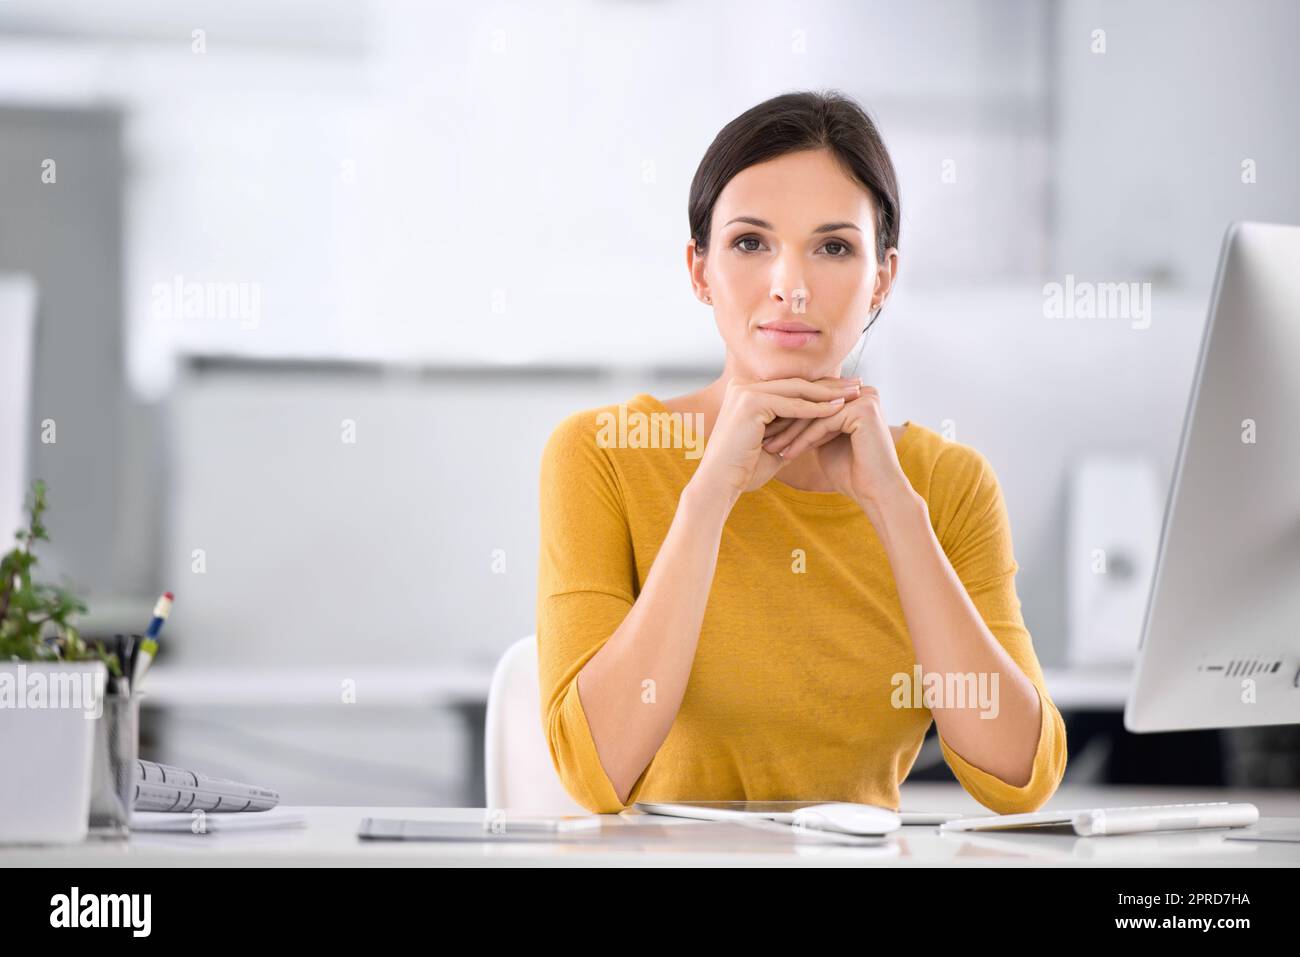 Seriöse, selbstbewusste und ehrgeizige Geschäftsfrau, die an ihrem Schreibtisch sitzt und ihr Kinn auf den Händen ruht. Porträt einer Unternehmerin, die während der Arbeit in einem Büro hervorragende Führungsqualitäten zeigt Stockfoto